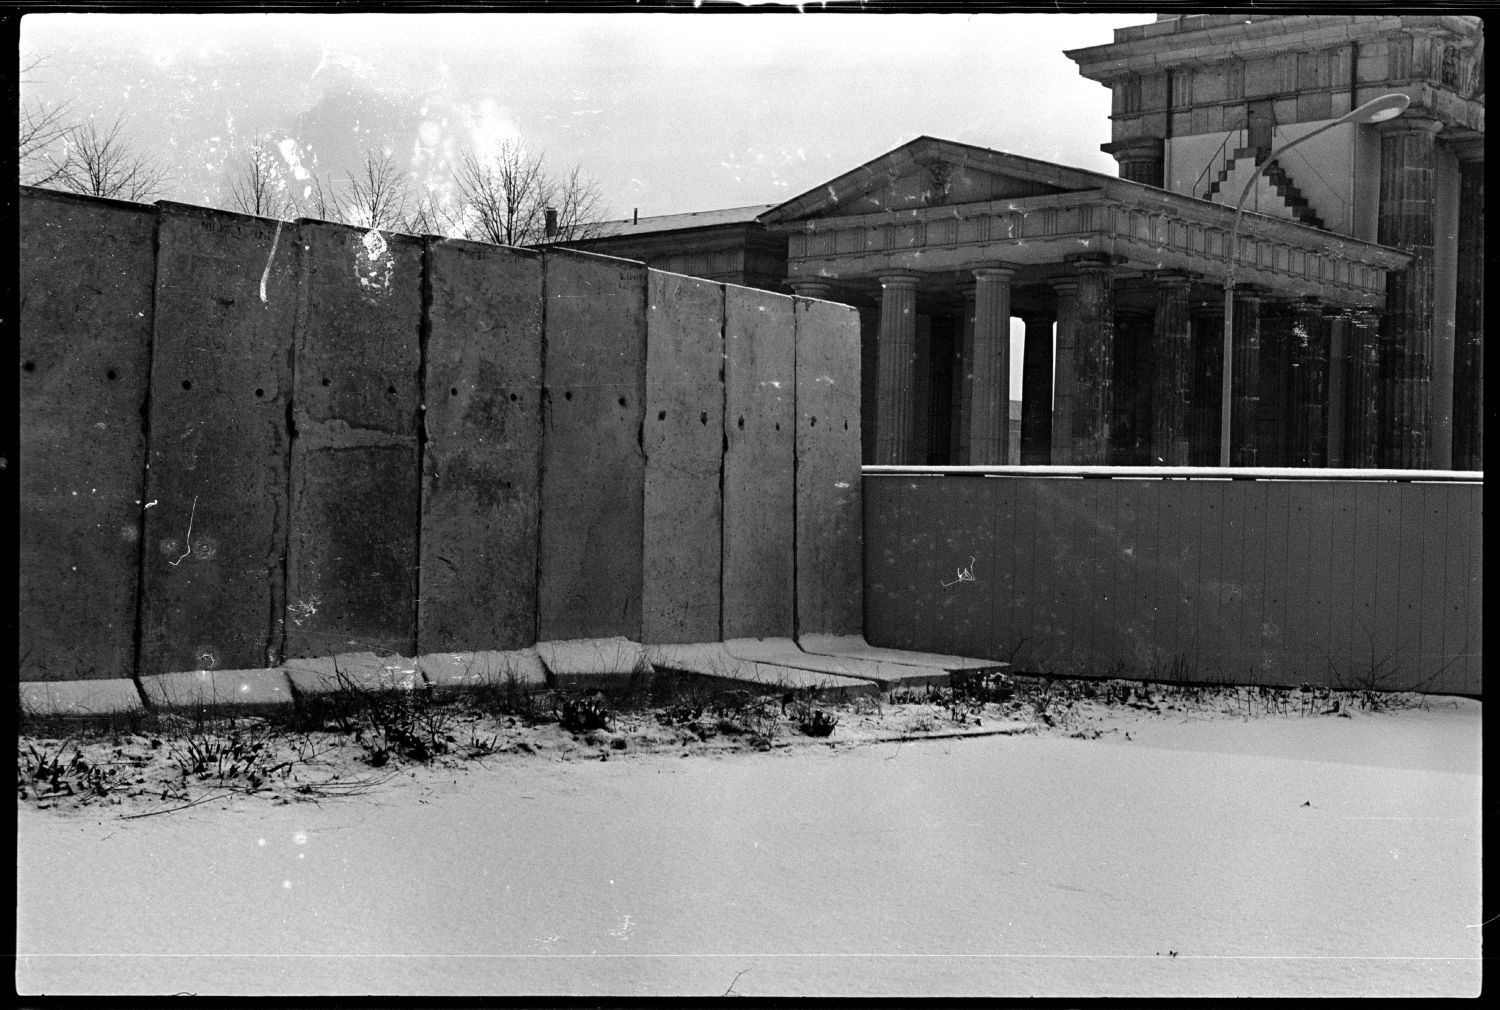 S/w-Fotografie: Ausbau der Berliner Mauer am Brandenburger Tor in Berlin-Mitte